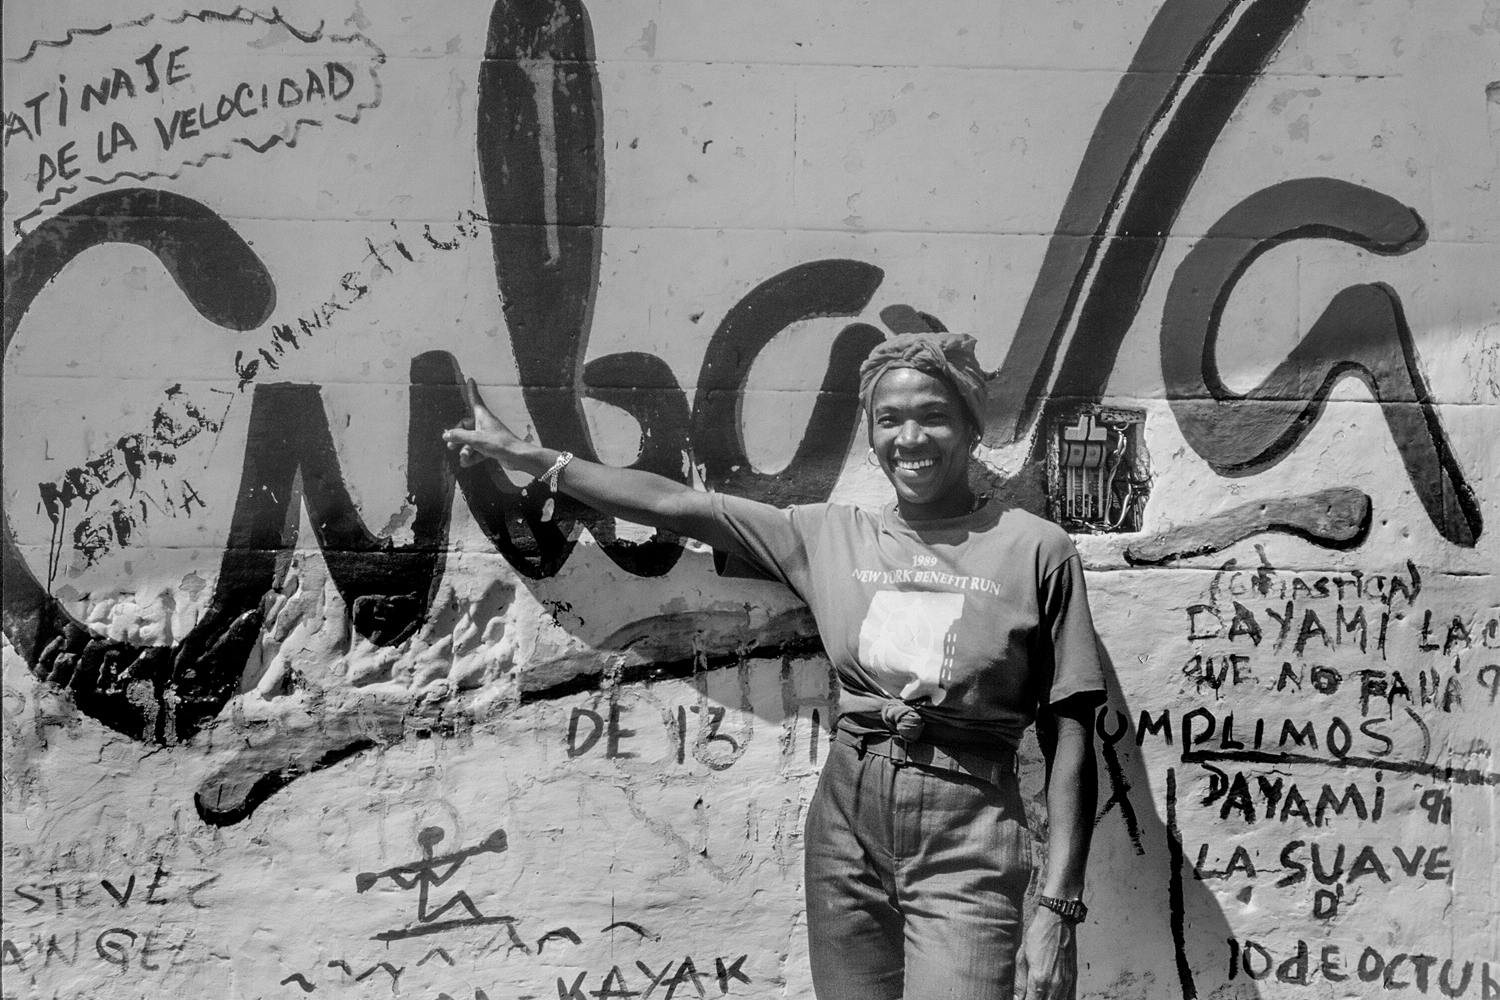 ANA FIDELIA QUIEROT
Ana Fidelia Quirot Moré  è un'ex mezzofondista e velocista cubana, due volte campionessa mondiale e medaglia d'argento ai Giochi olimpici di Atlanta 1996 negli 800 metri piani.
Soprannominata “la Tempesta dei Caraibi”. Ana, che porta nel suo secondo nome di “Fidelia” la storia e la passione politica dei suoi genitori che lottarono a fianco del Comandante en Jefe, Fidel Castro, per il trionfo della Rivoluzione.